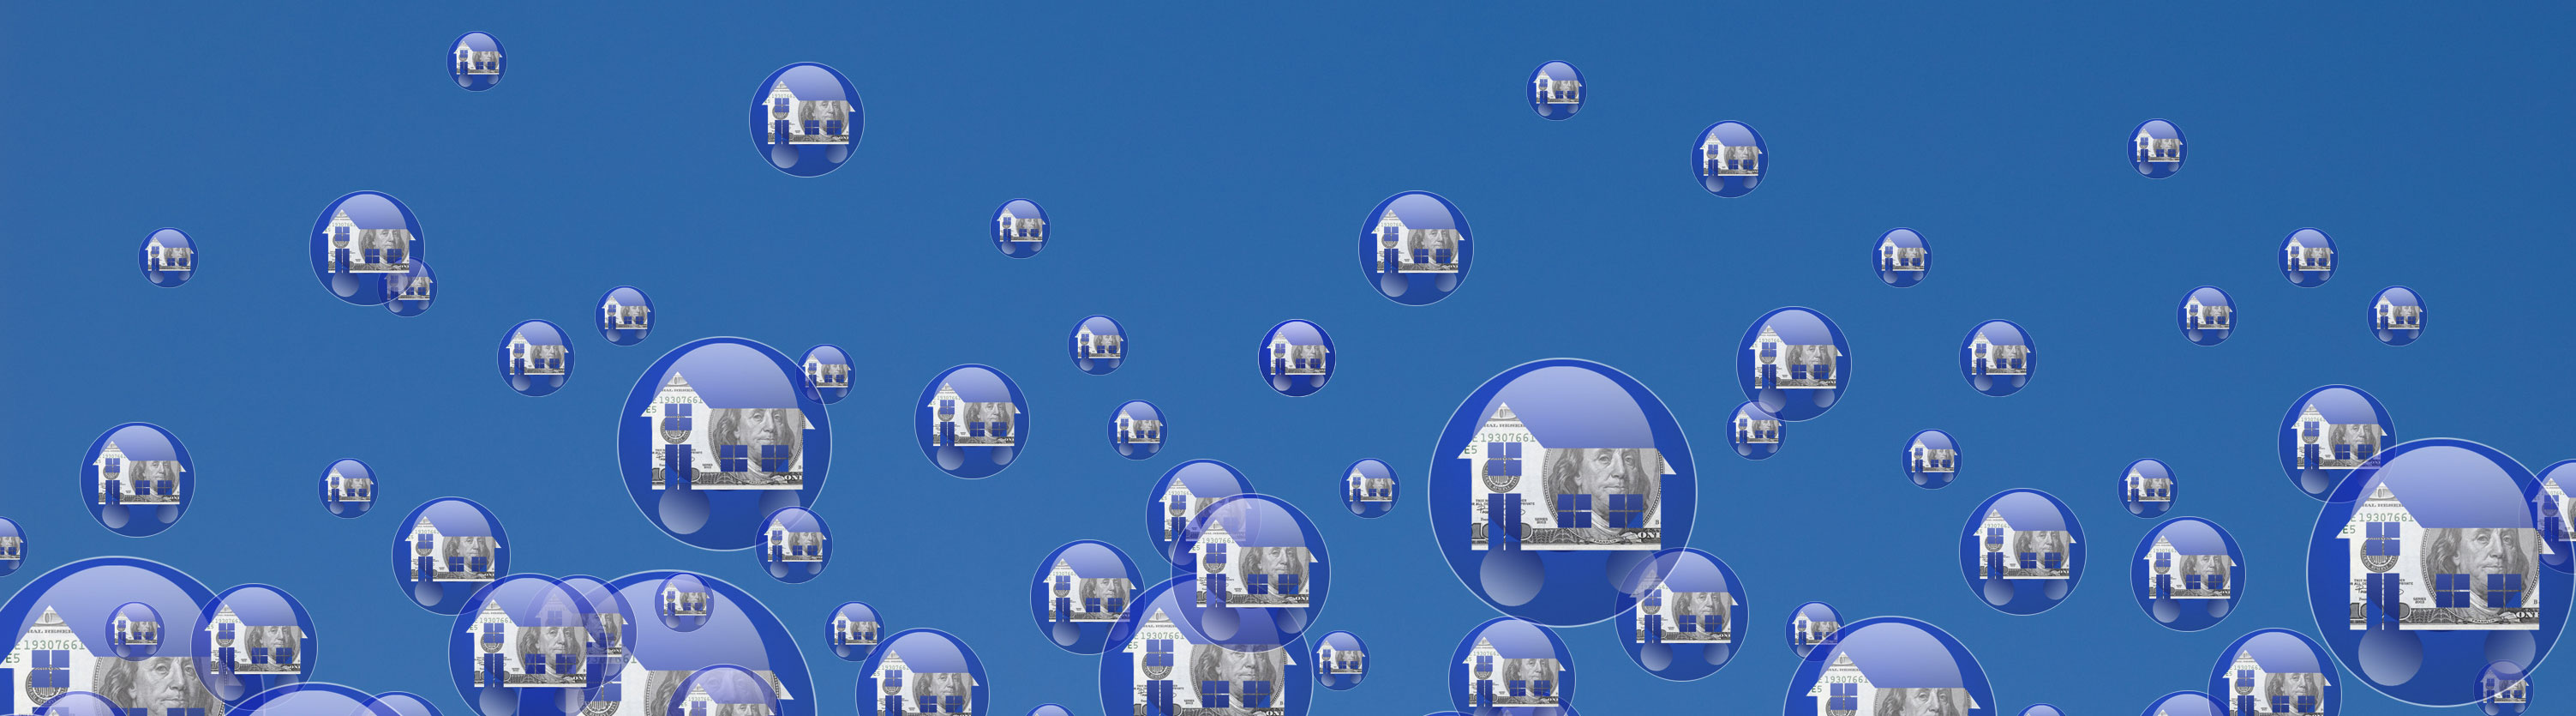 Housing Bubbles